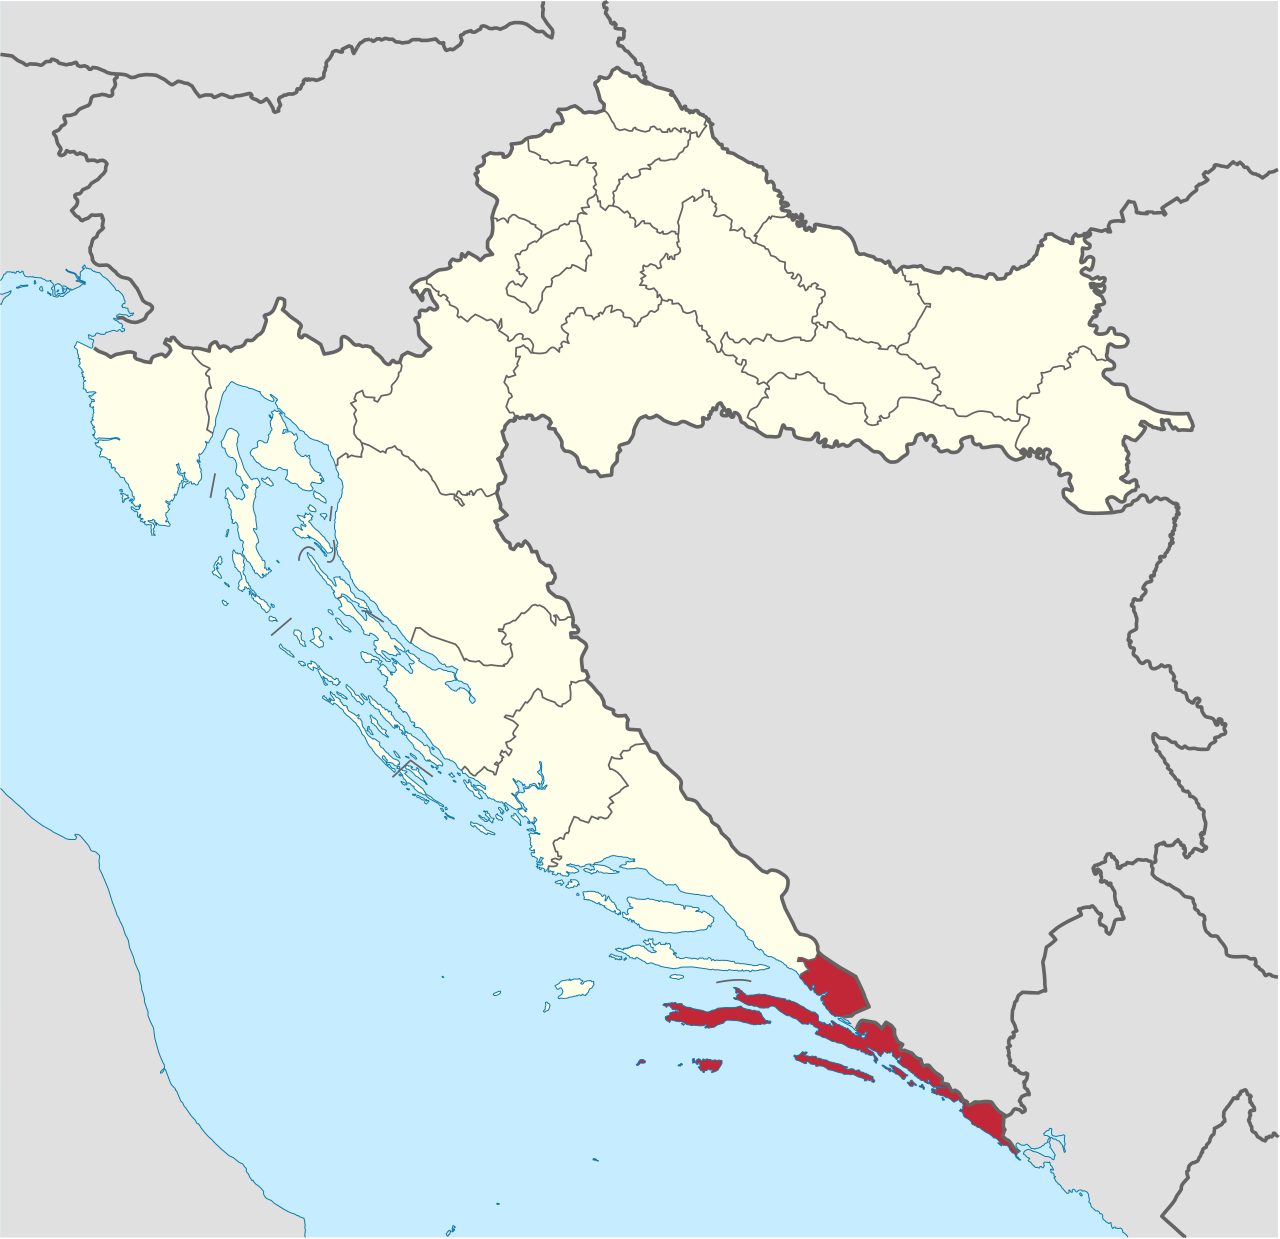 Kupari Hotel Urbex location or around the region Dubrovnik-Neretva (Općina Župa Dubrovačka), Croatia